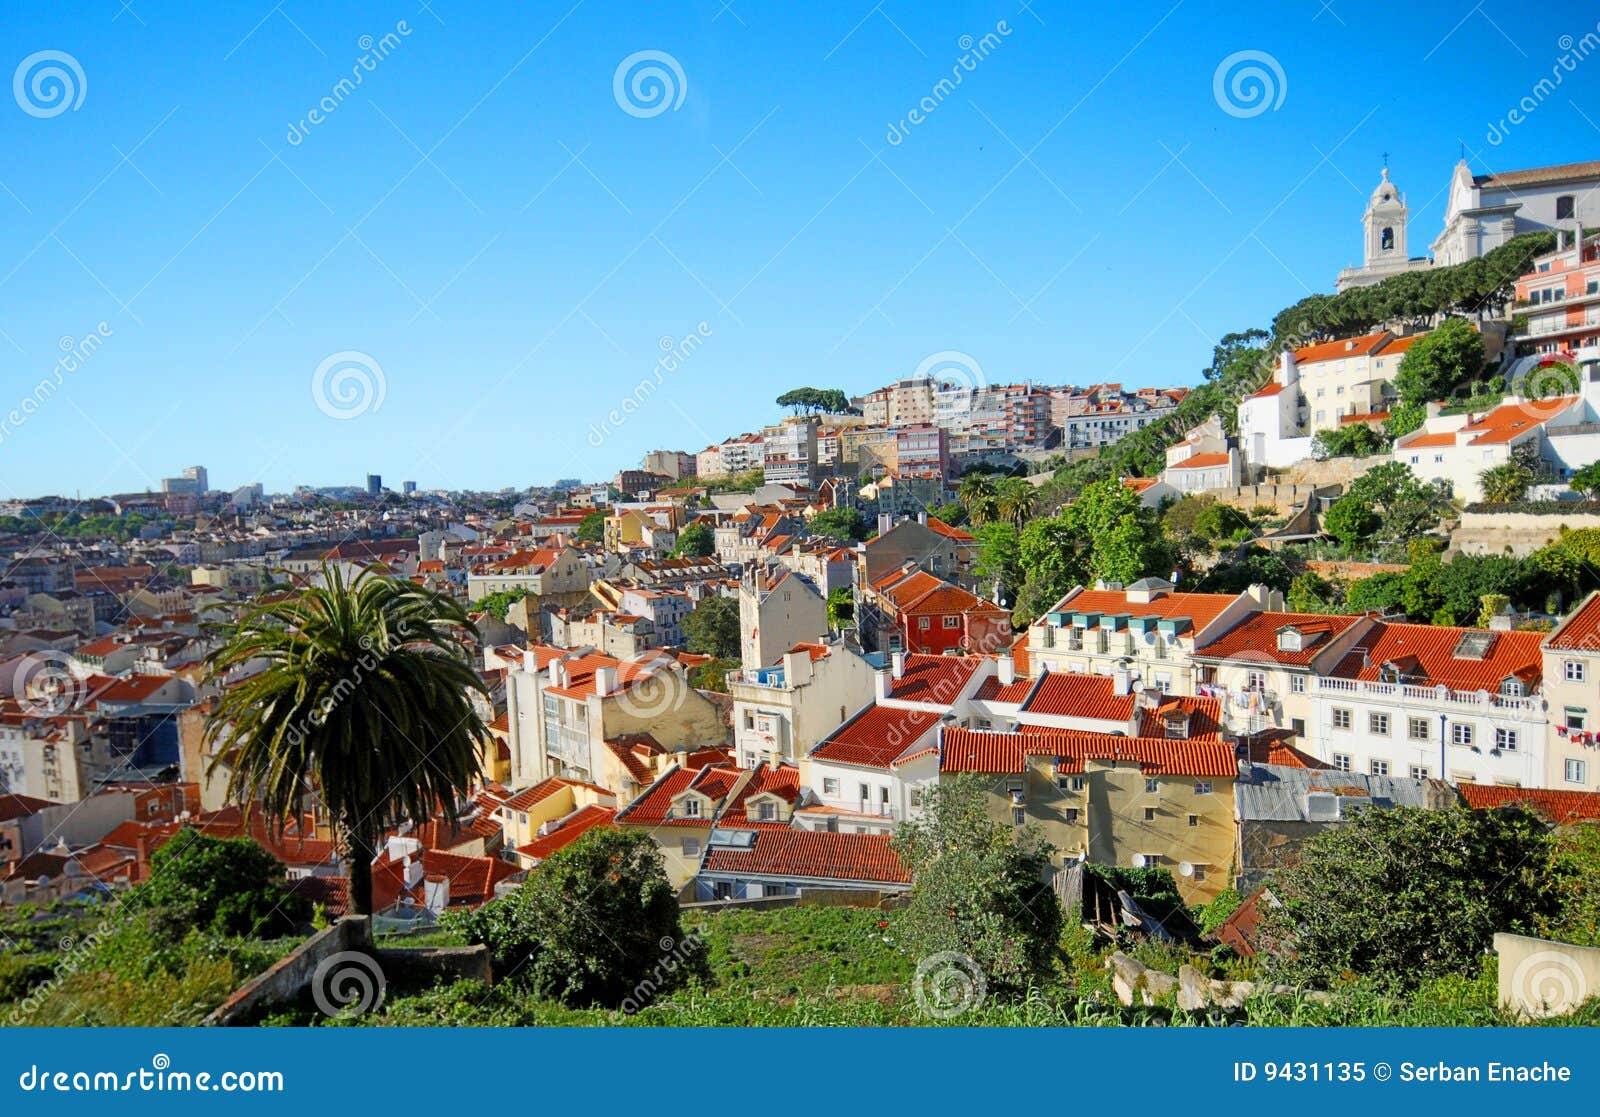 lisbon portugal hillside